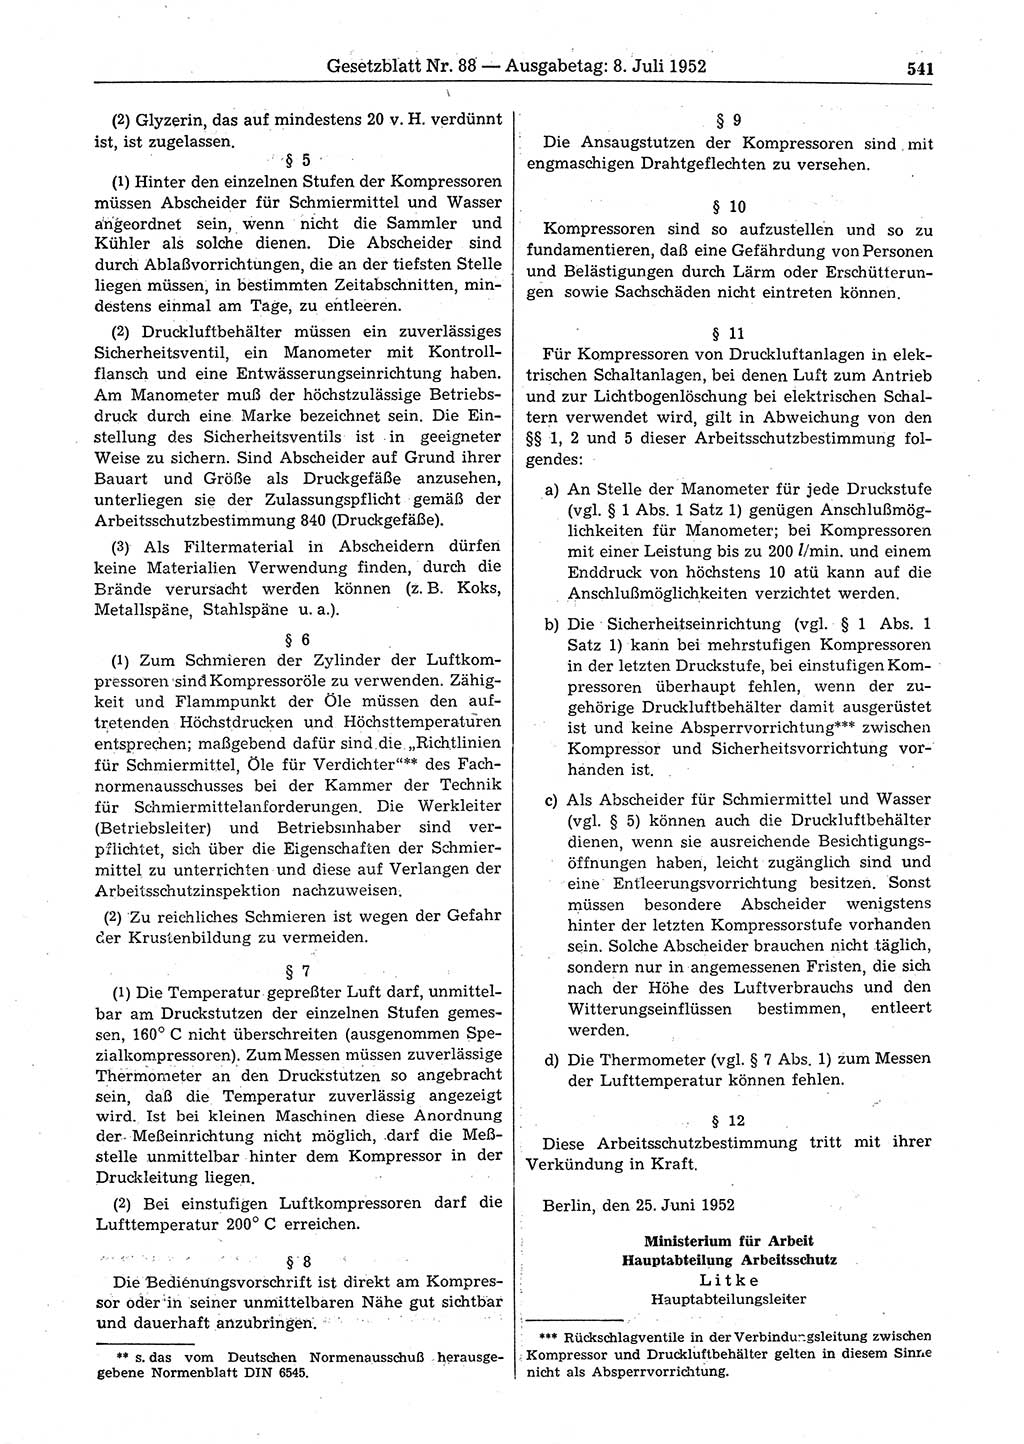 Gesetzblatt (GBl.) der Deutschen Demokratischen Republik (DDR) 1952, Seite 541 (GBl. DDR 1952, S. 541)